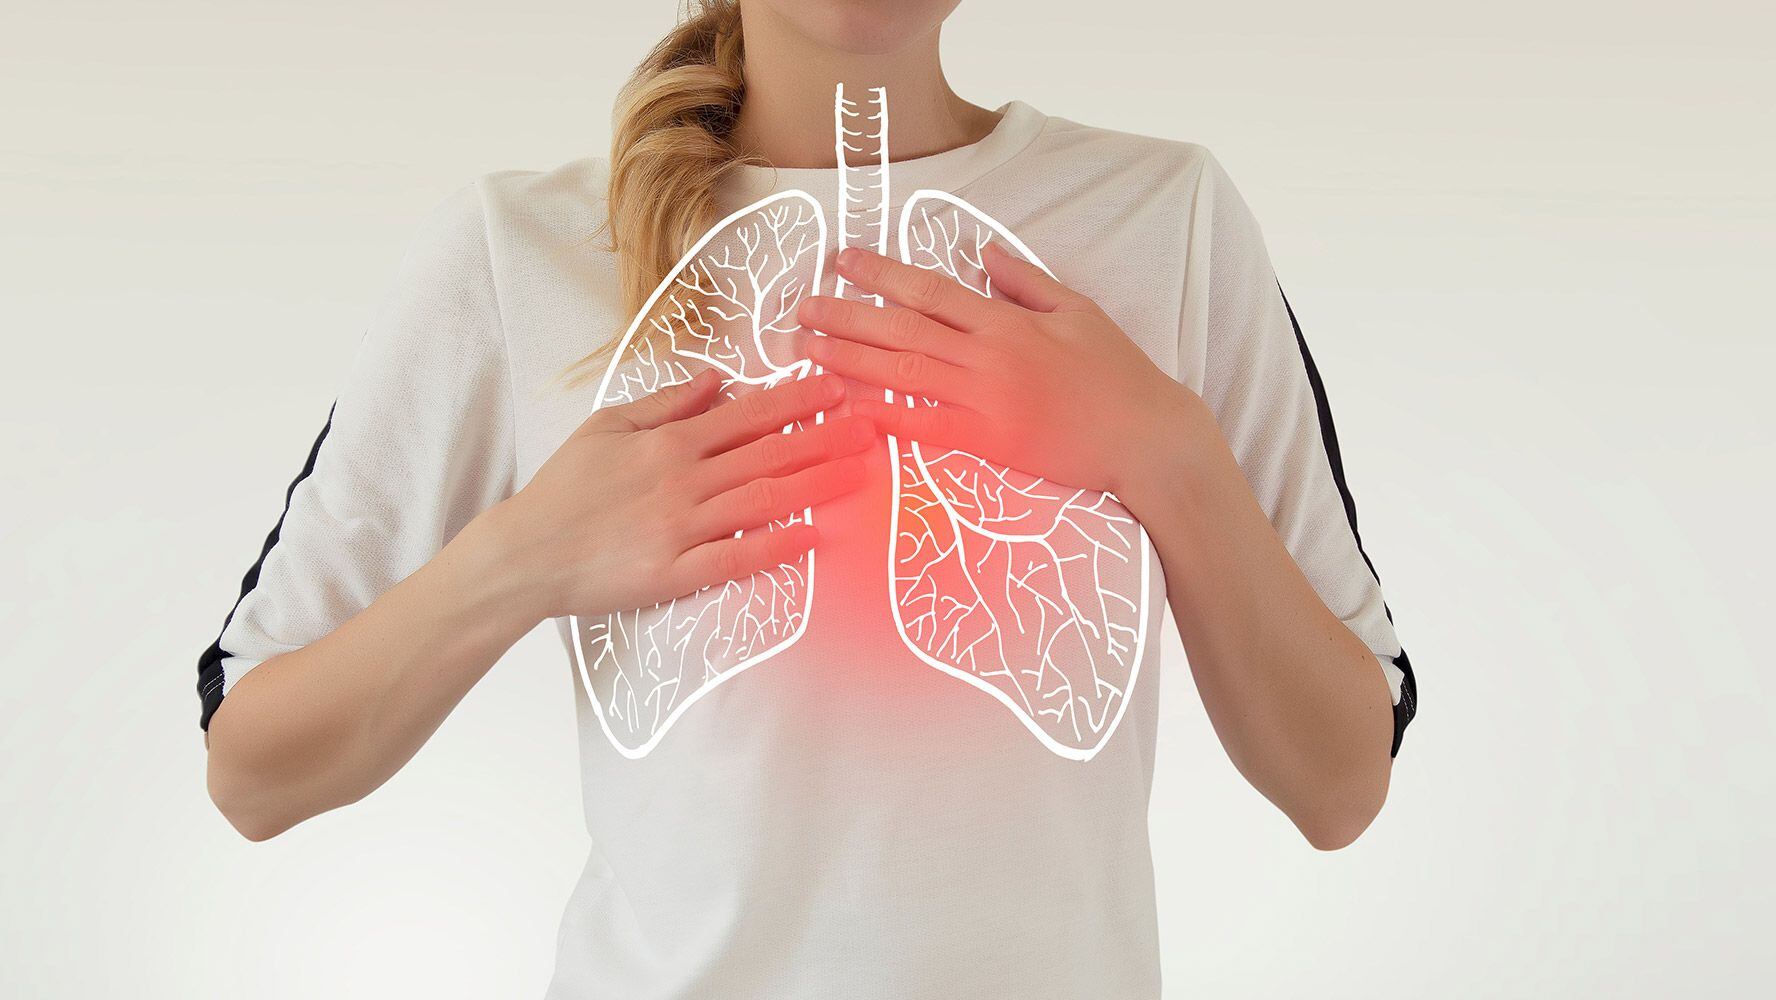 Una trombosis pulmonar puede provocar la muerte si no se atiende a tiempo.